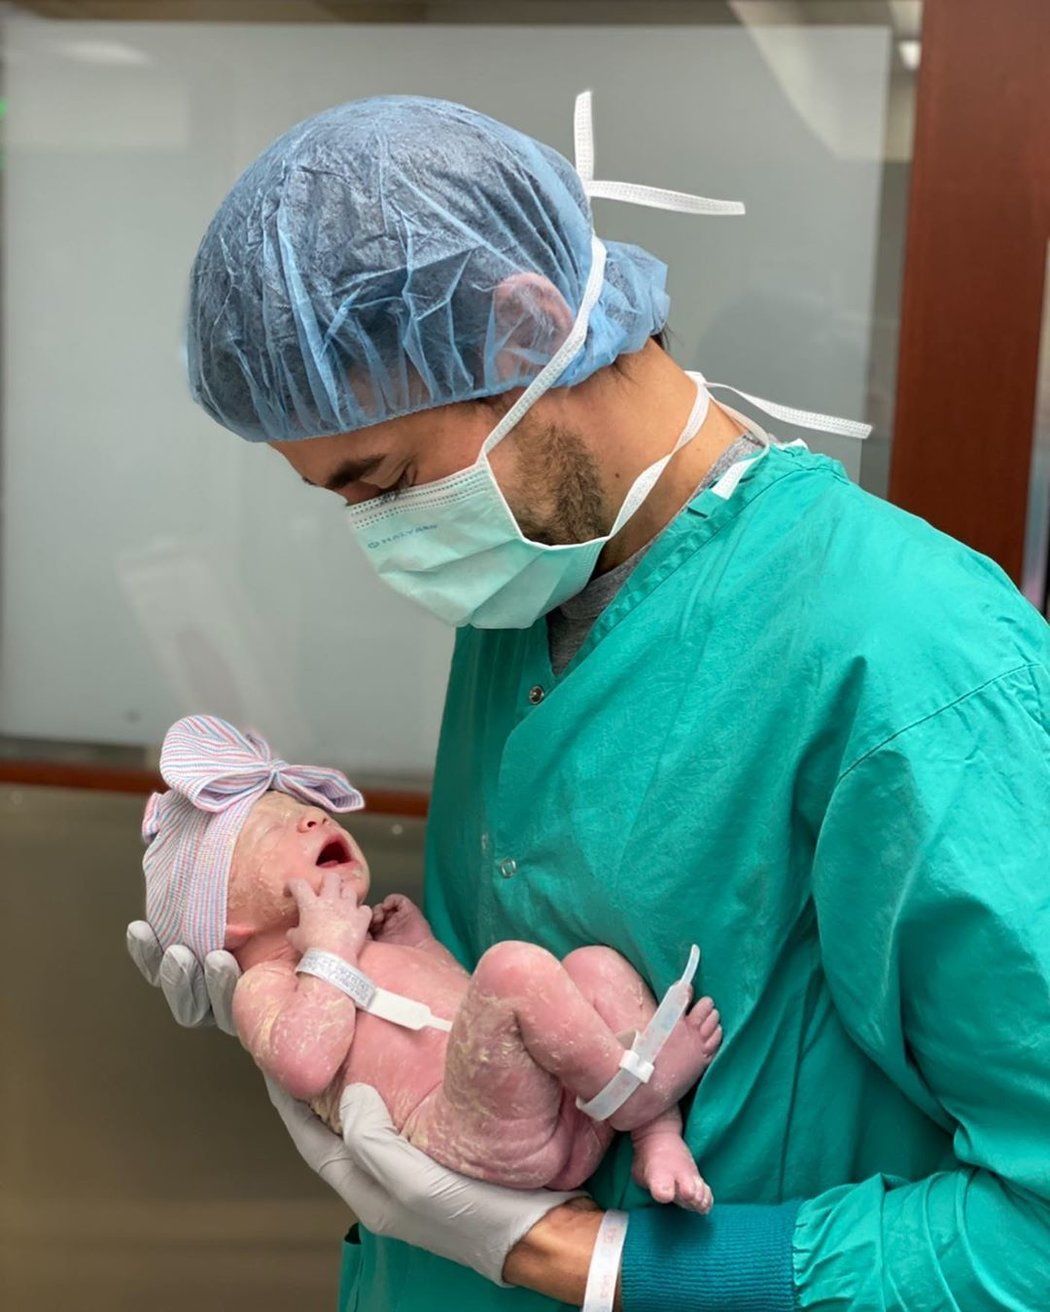 Hrdý tatínek Enrique Iglesias s novorzenou dcerkou, jejíž jméno slavný pár zatím drží v tajnosti...